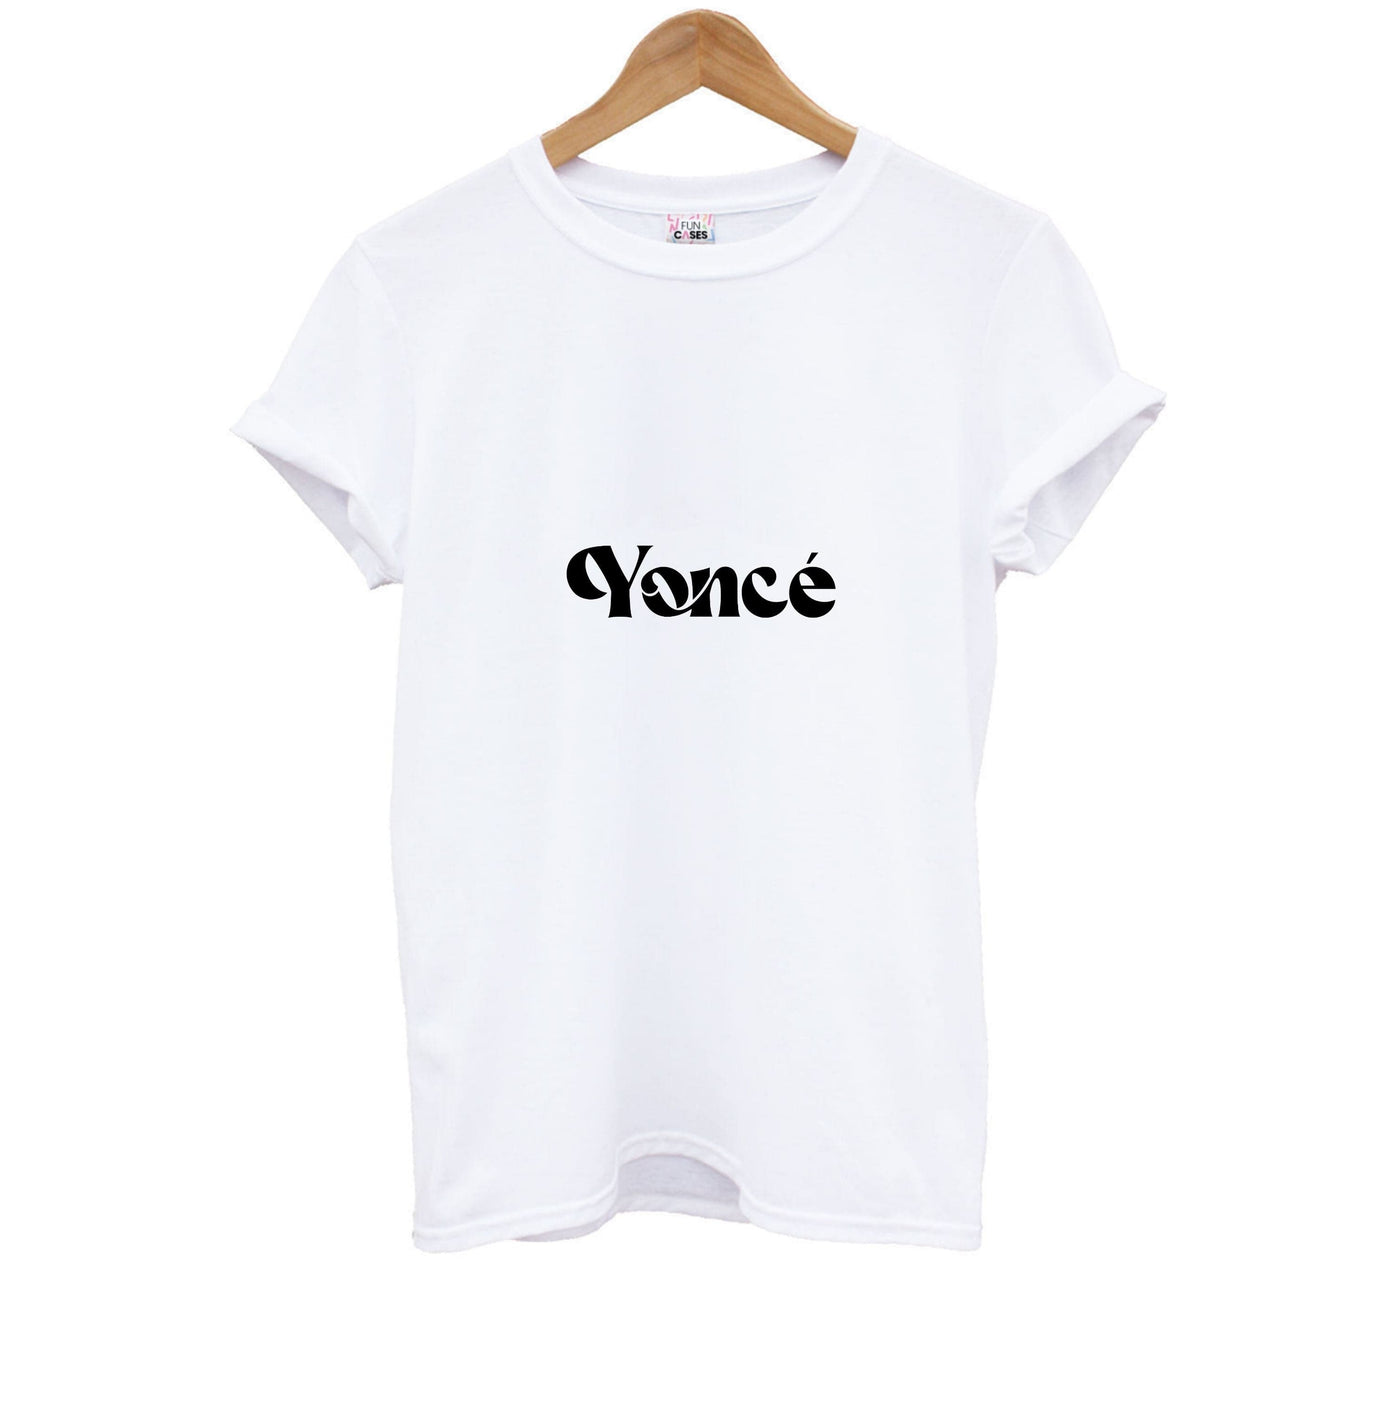 Yonce - Beyonce Kids T-Shirt